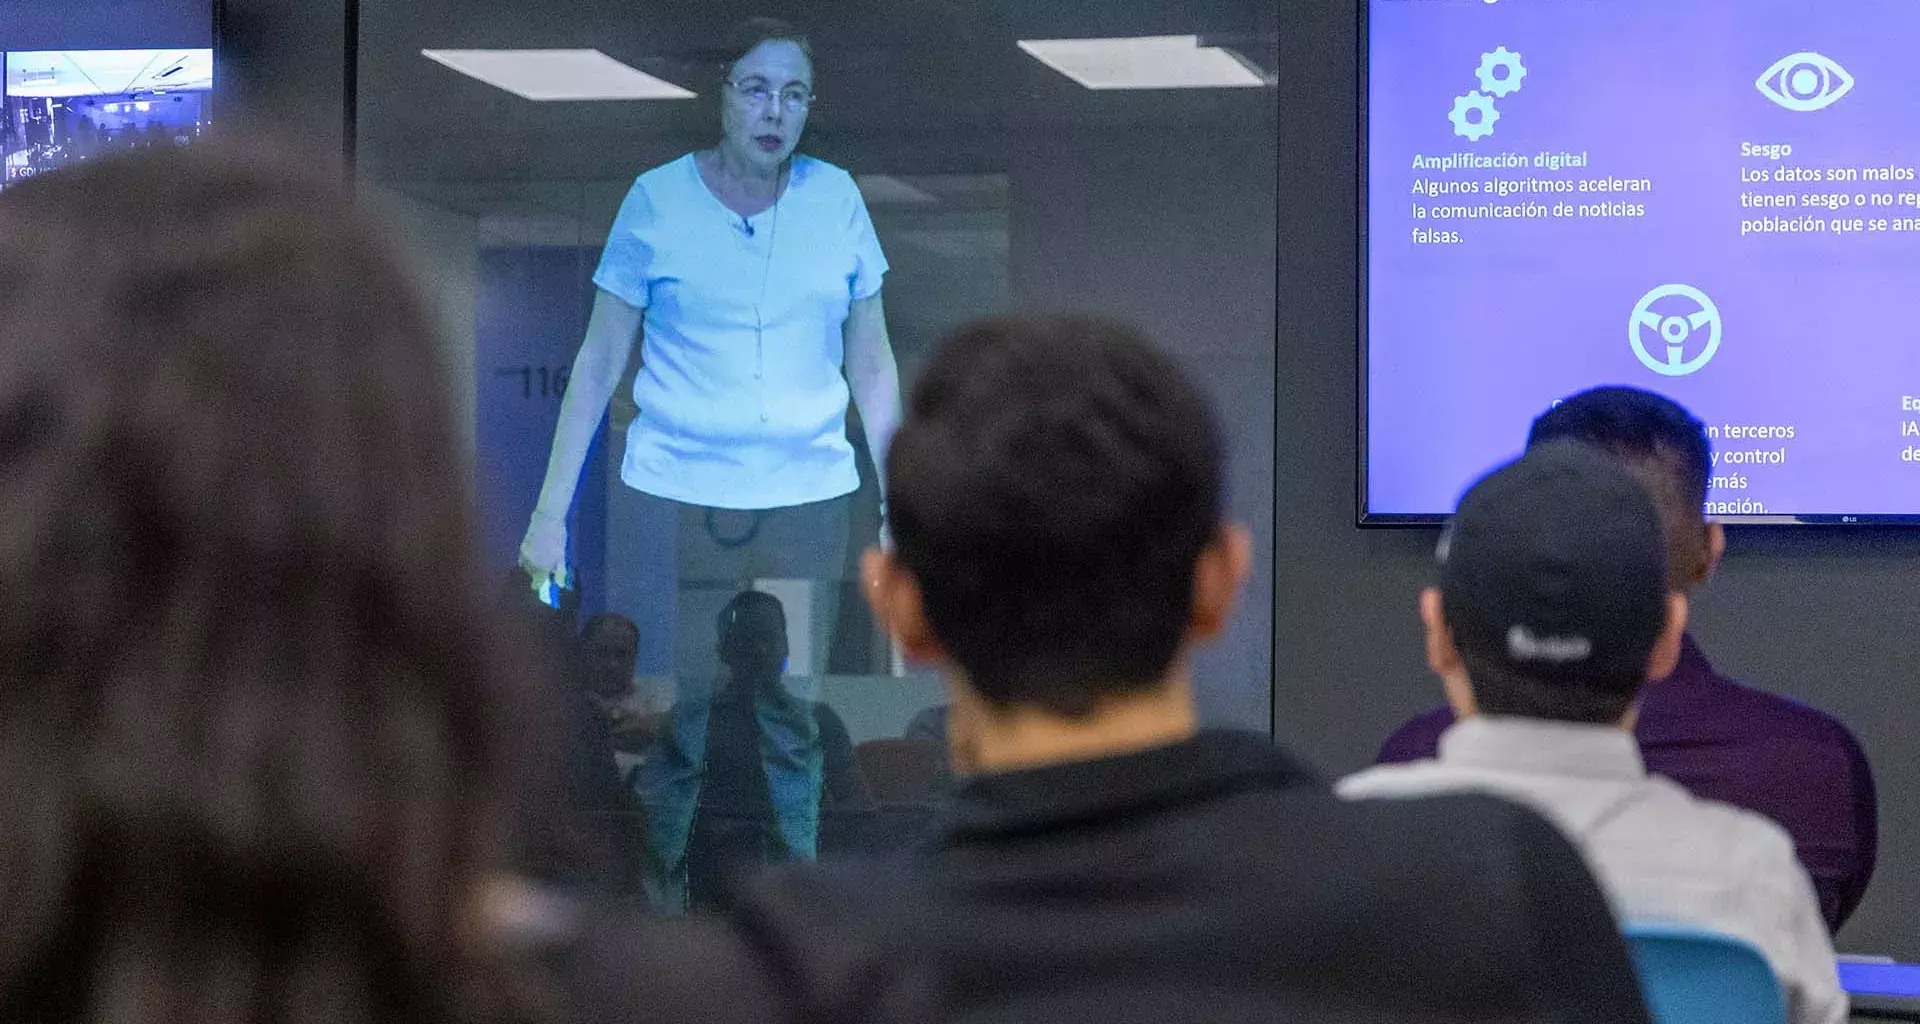 Profesora Holograma durante la clase en 11 campus 